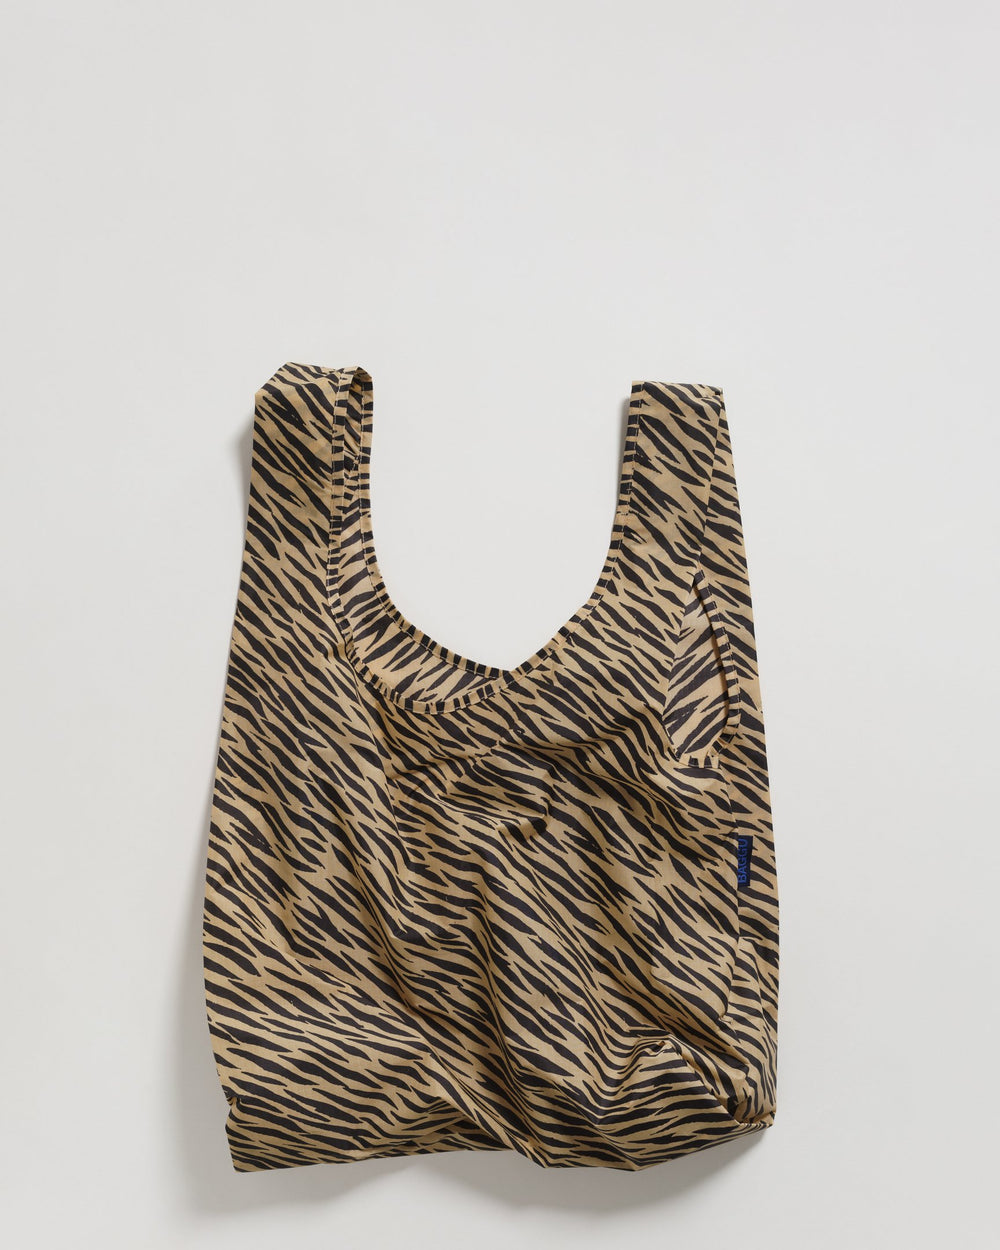 Tiger Stripe Standard Reusable Bag